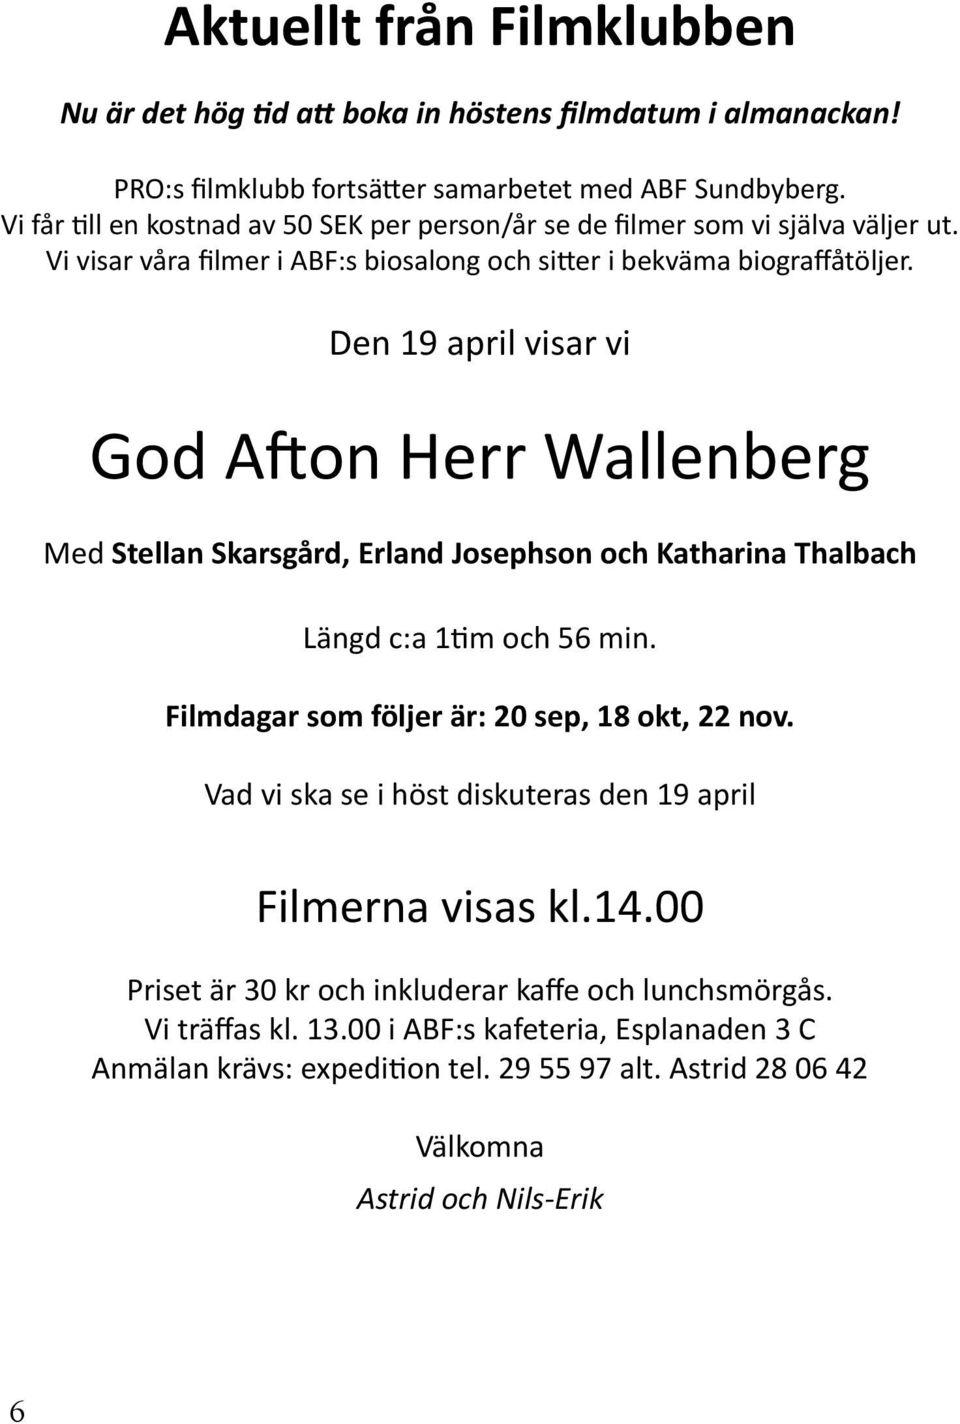 Den 19 april visar vi God A on Herr Wallenberg Med Stellan Skarsgård, Erland Josephson och Katharina Thalbach Längd c:a 1 m och 56 min. Filmdagar som följer är: 20 sep, 18 okt, 22 nov.